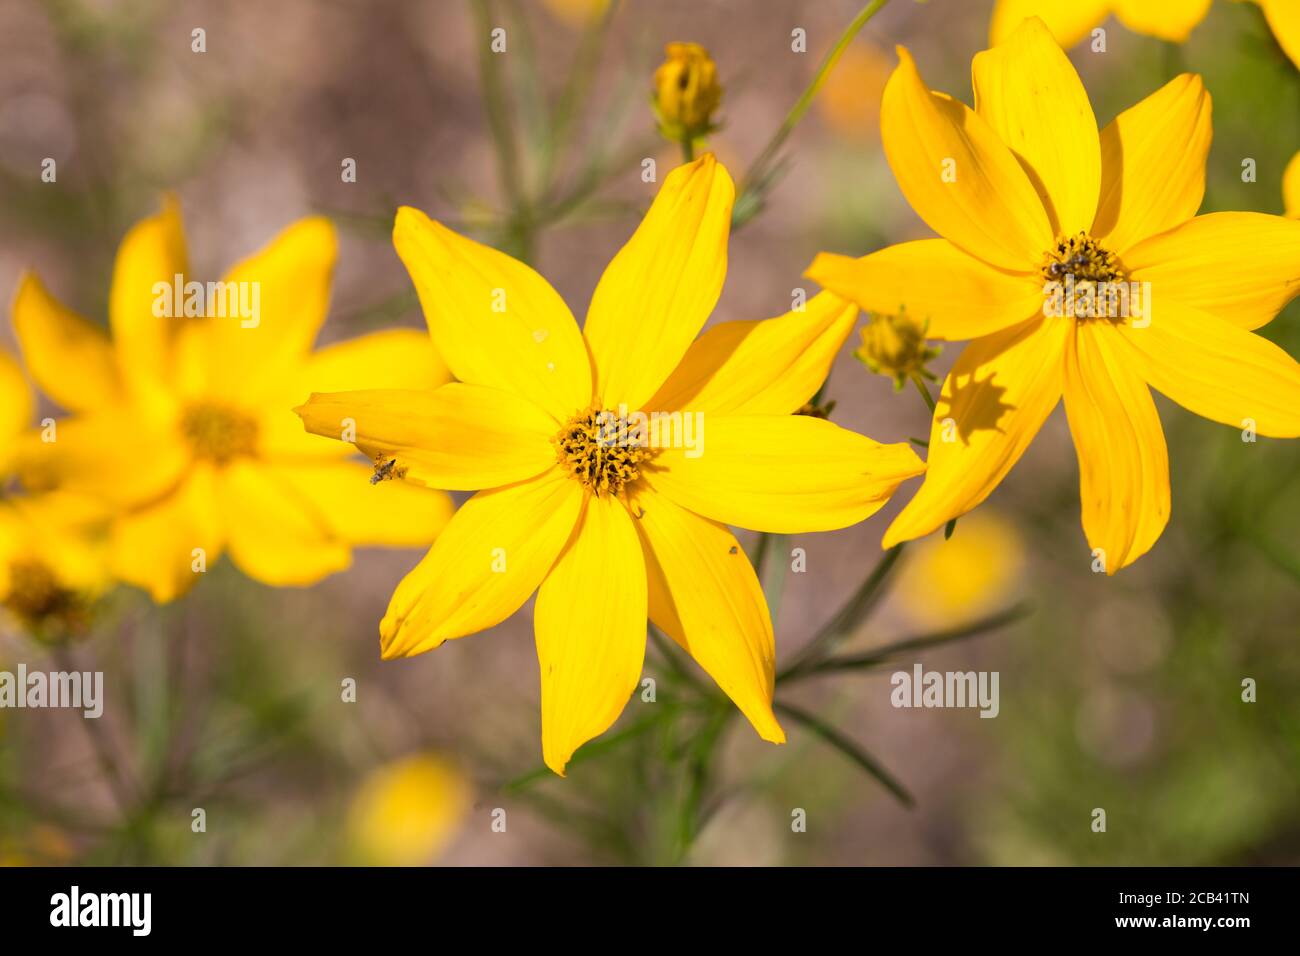 Nahaufnahme von Corepsis verticillata. Gelbe Blume mit acht Blütenblättern. Zu den gebräuchlichen Namen gehören whrelige Tickseed, Thread-leaved Tickseed und Pot-of-Gold. Stockfoto